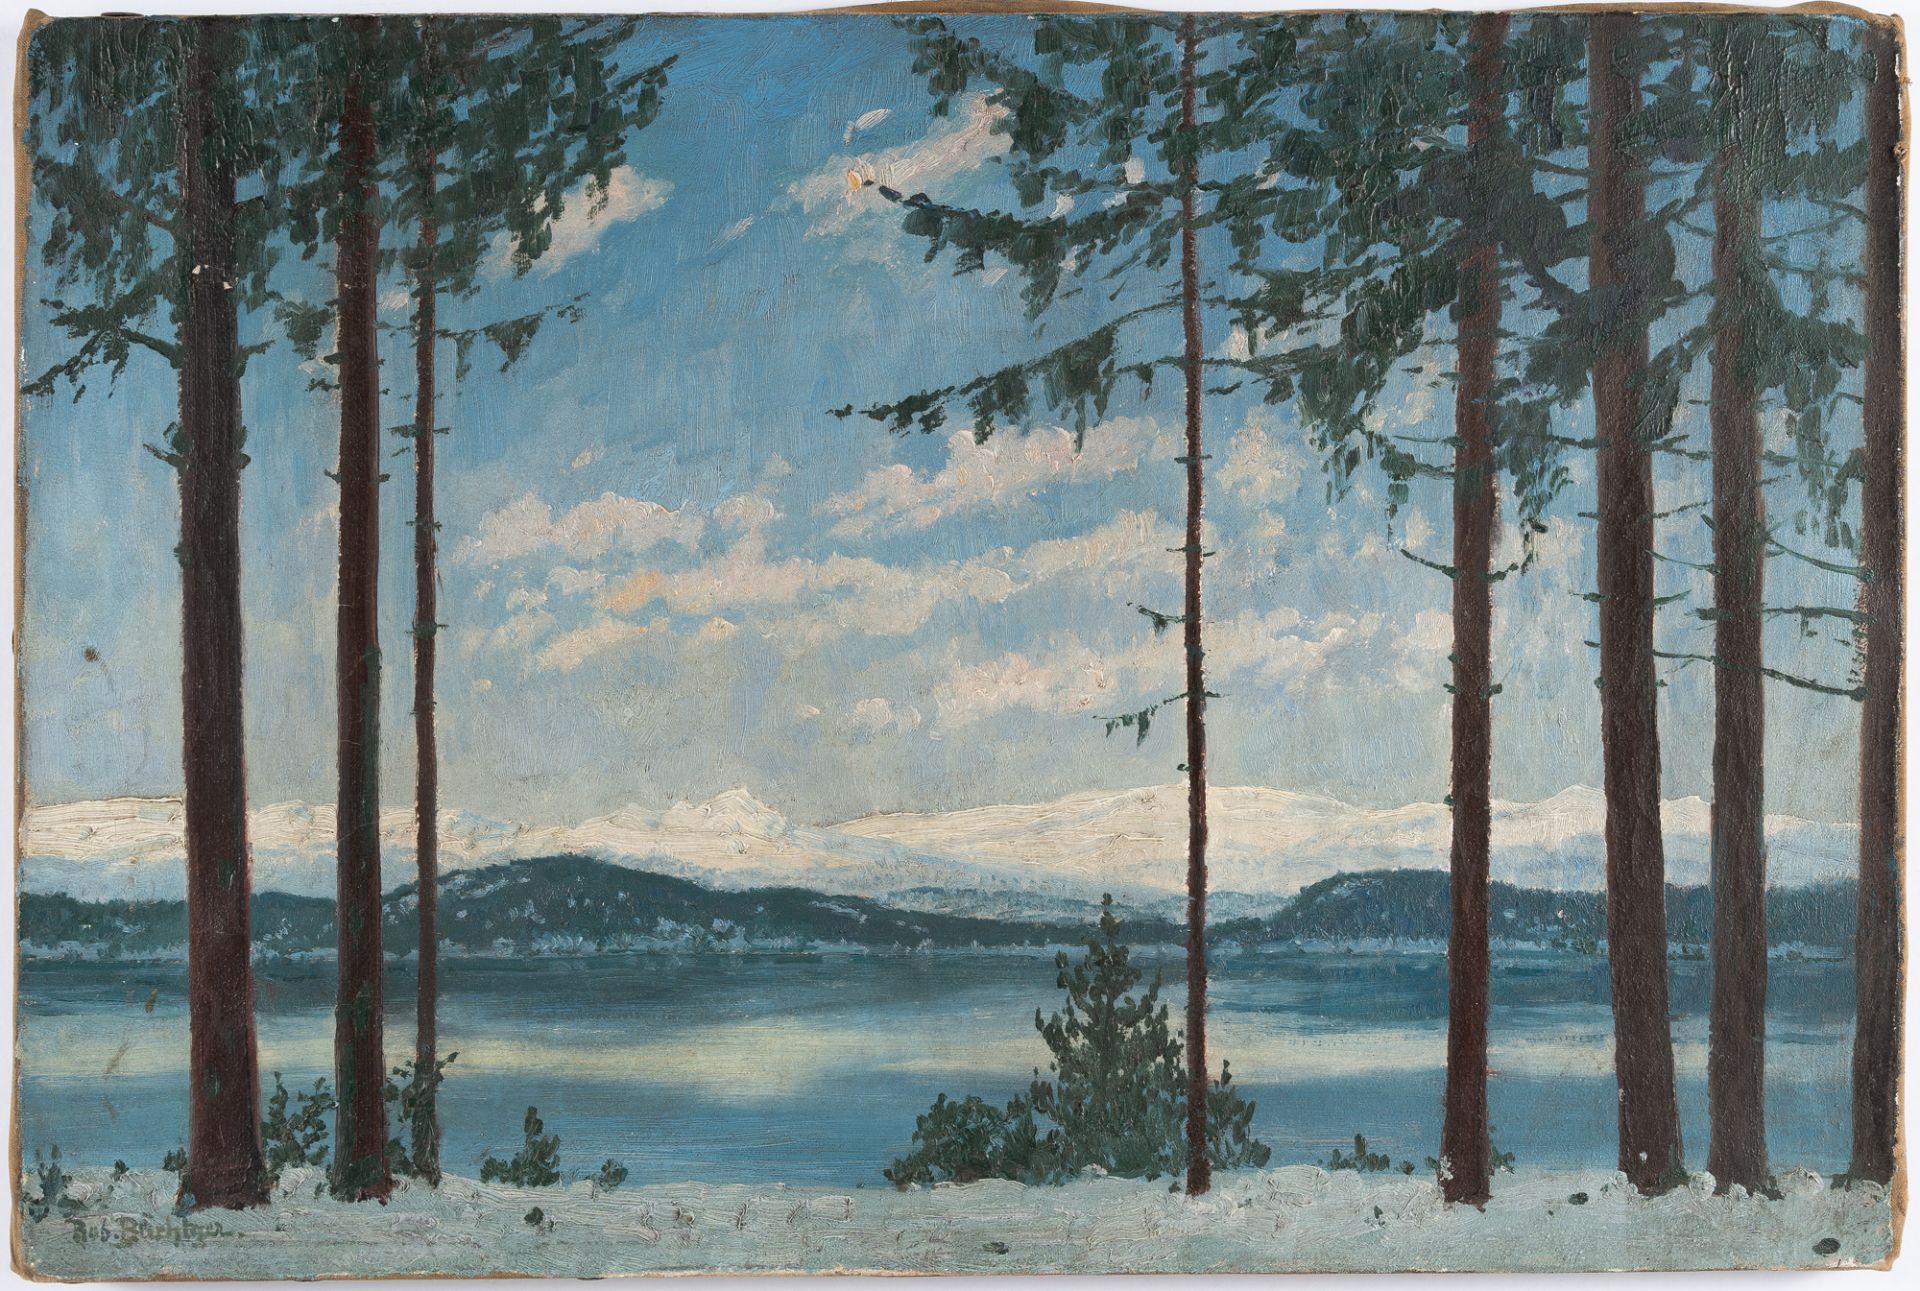 Robert Büchtger – Winterliche Landschaft am See mit Bergpanorama (Eibsee) - Image 2 of 3